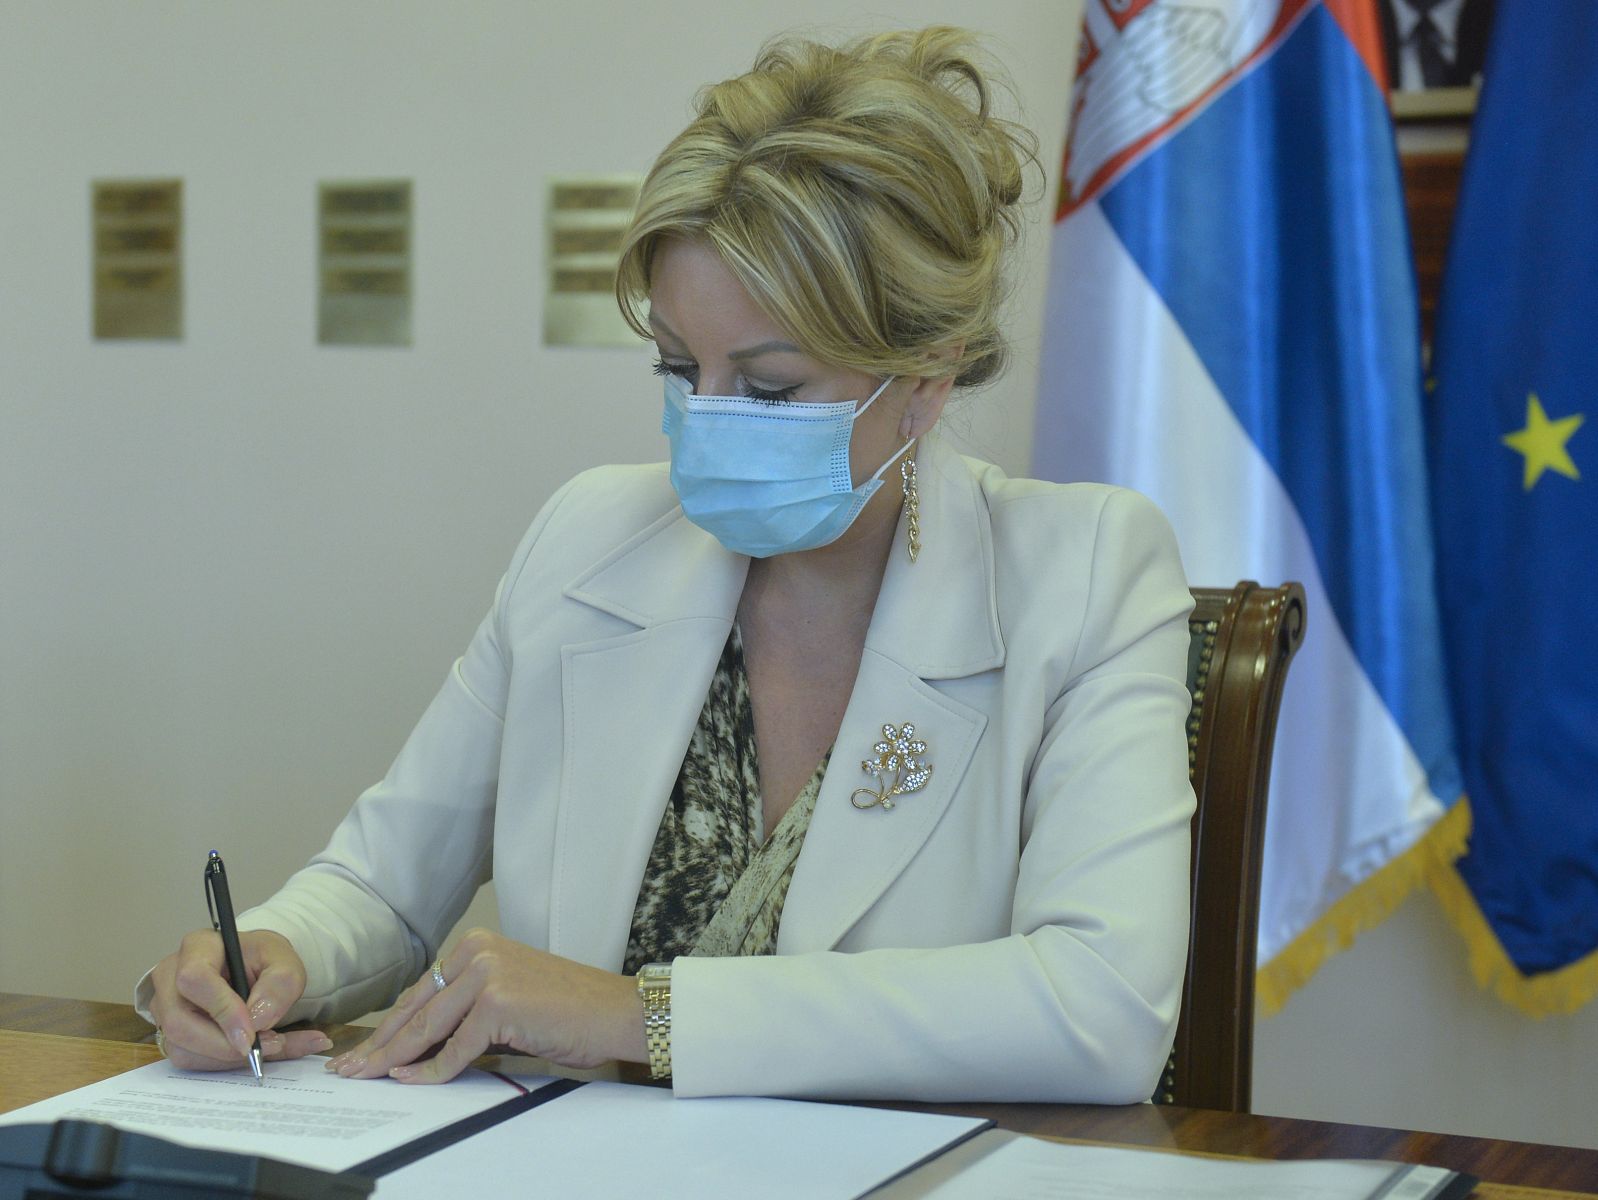 Ј. Јоксимовић: Здравствени радници под теретом, оснаживање важно за Србију